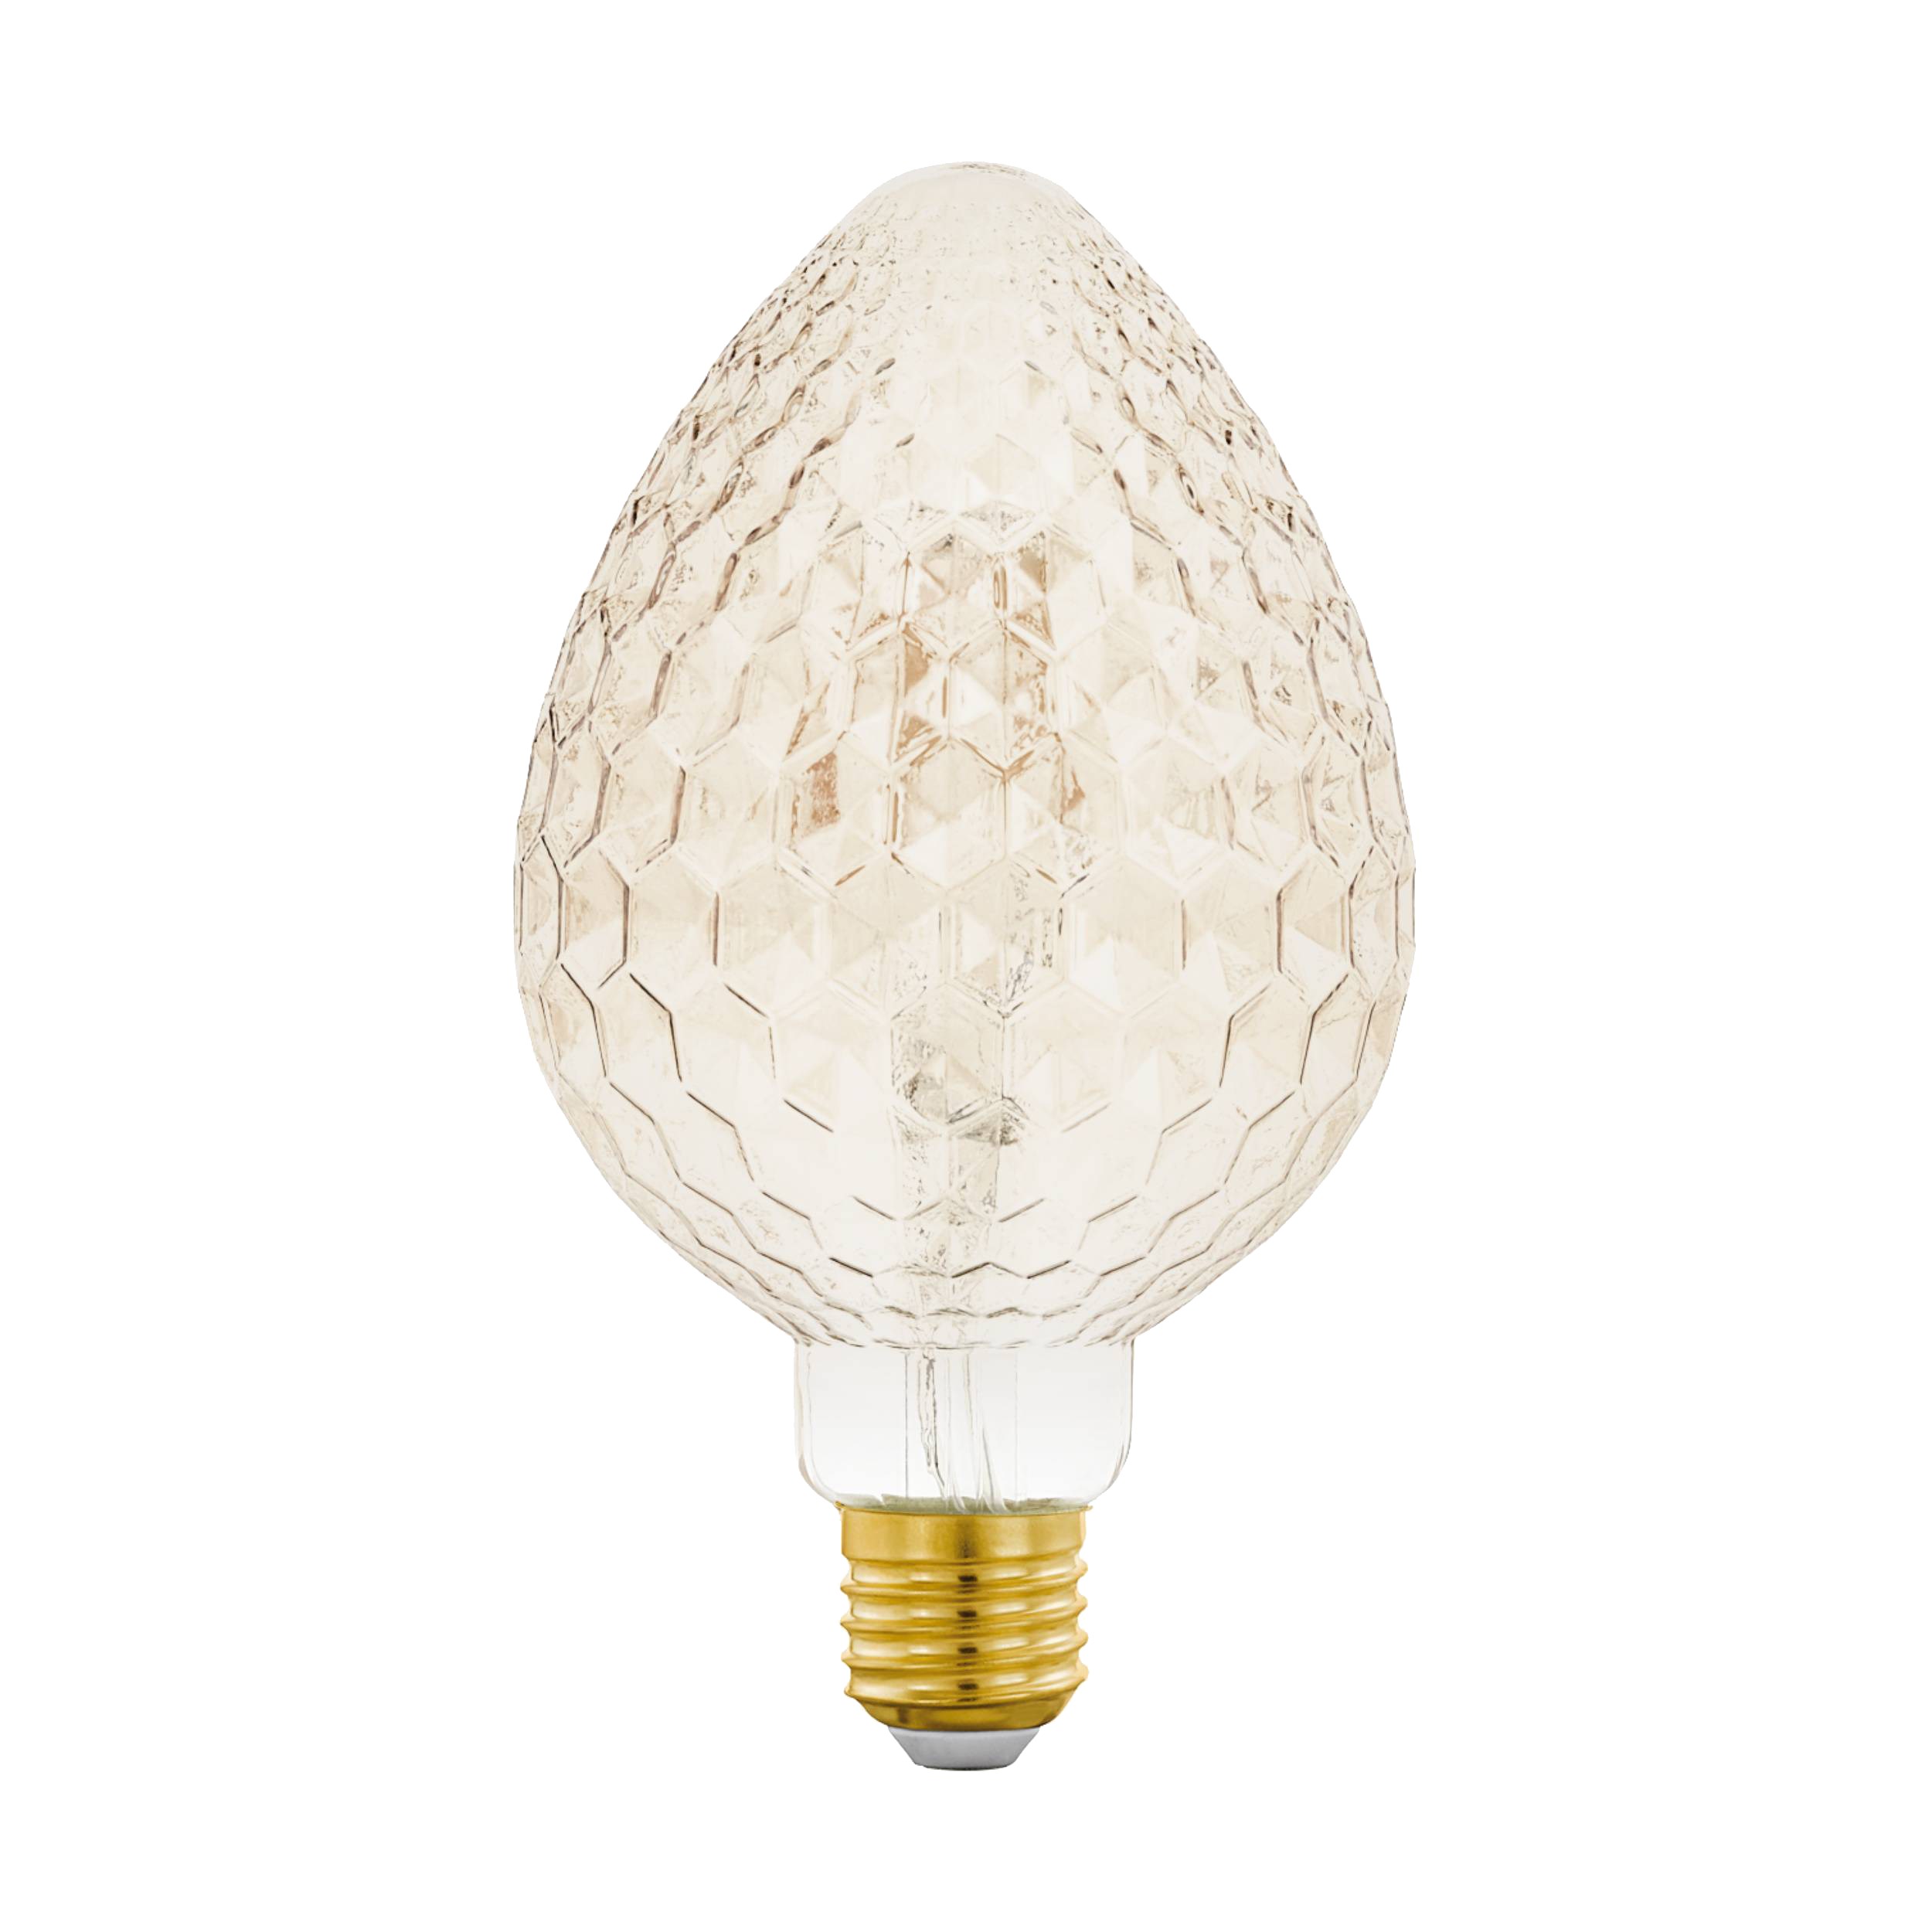 Eglo LED pære deko 18 x 10 x 10 cm sokkel e27 - Kogle amber med heksagon mønster og dæmpbar